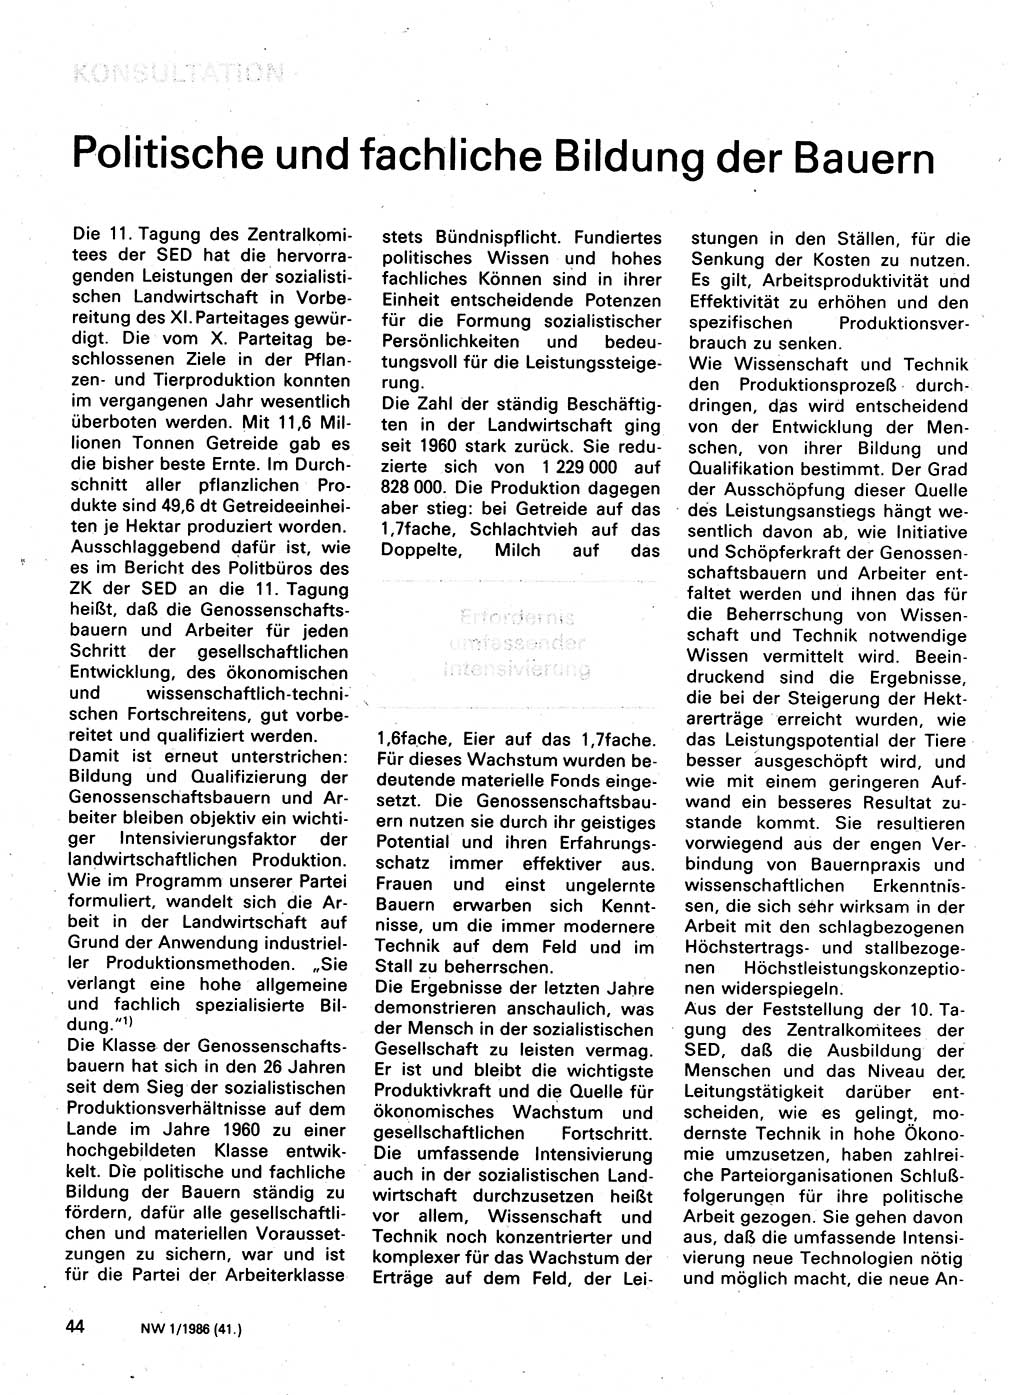 Neuer Weg (NW), Organ des Zentralkomitees (ZK) der SED (Sozialistische Einheitspartei Deutschlands) für Fragen des Parteilebens, 41. Jahrgang [Deutsche Demokratische Republik (DDR)] 1986, Seite 44 (NW ZK SED DDR 1986, S. 44)